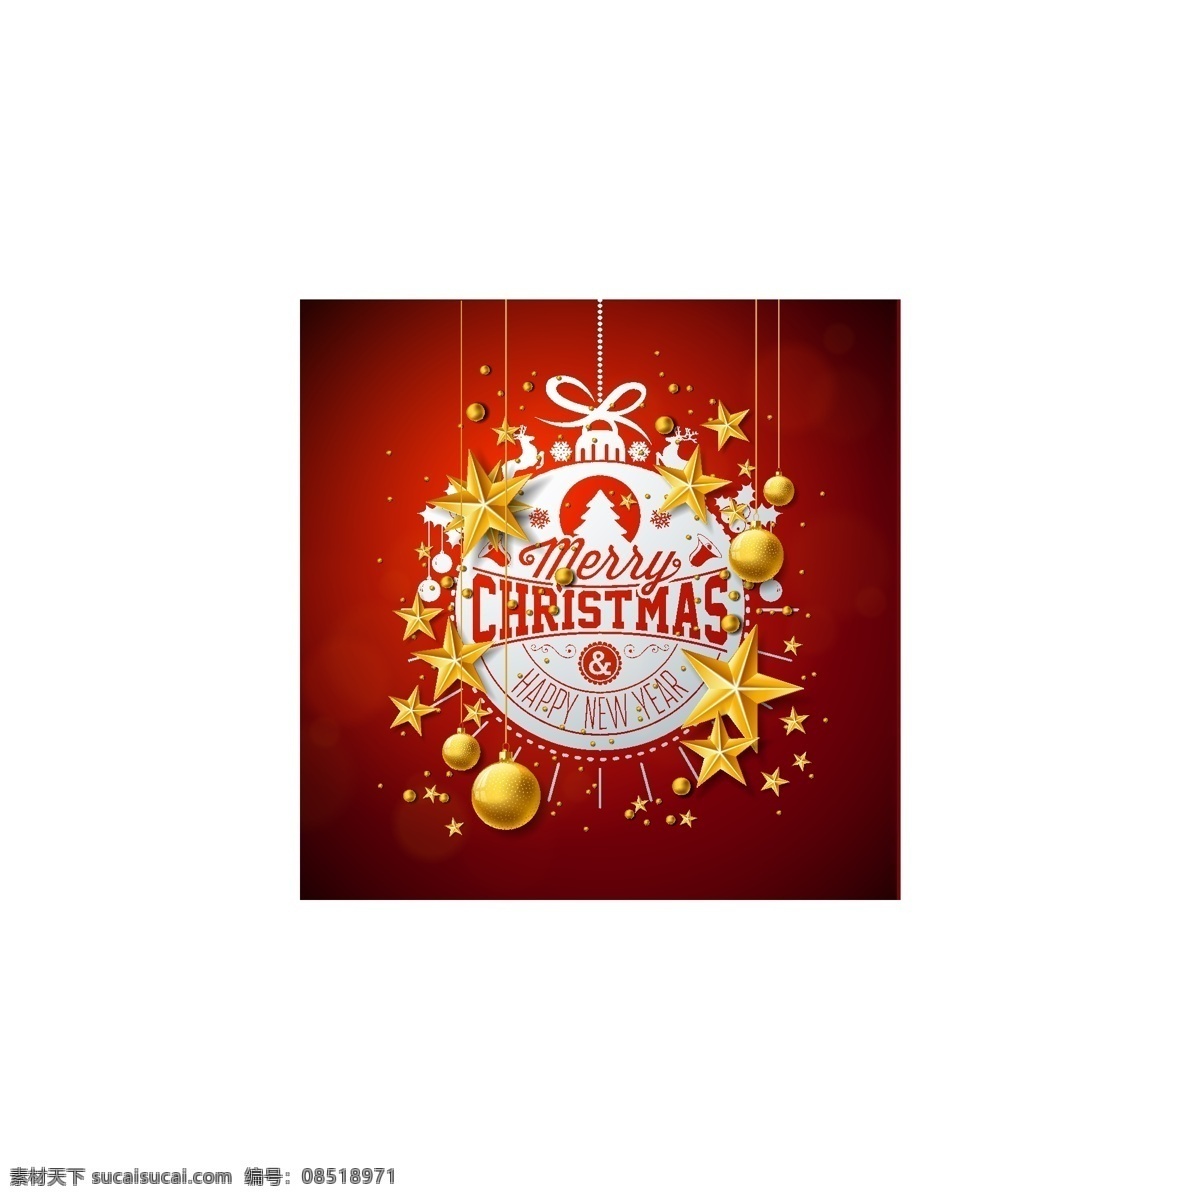 圣诞 矢量 素材图片 圣诞背景 圣诞节海报 圣诞促销 节日广告 圣诞节五角星 圣诞球 圣诞英文 展板模板